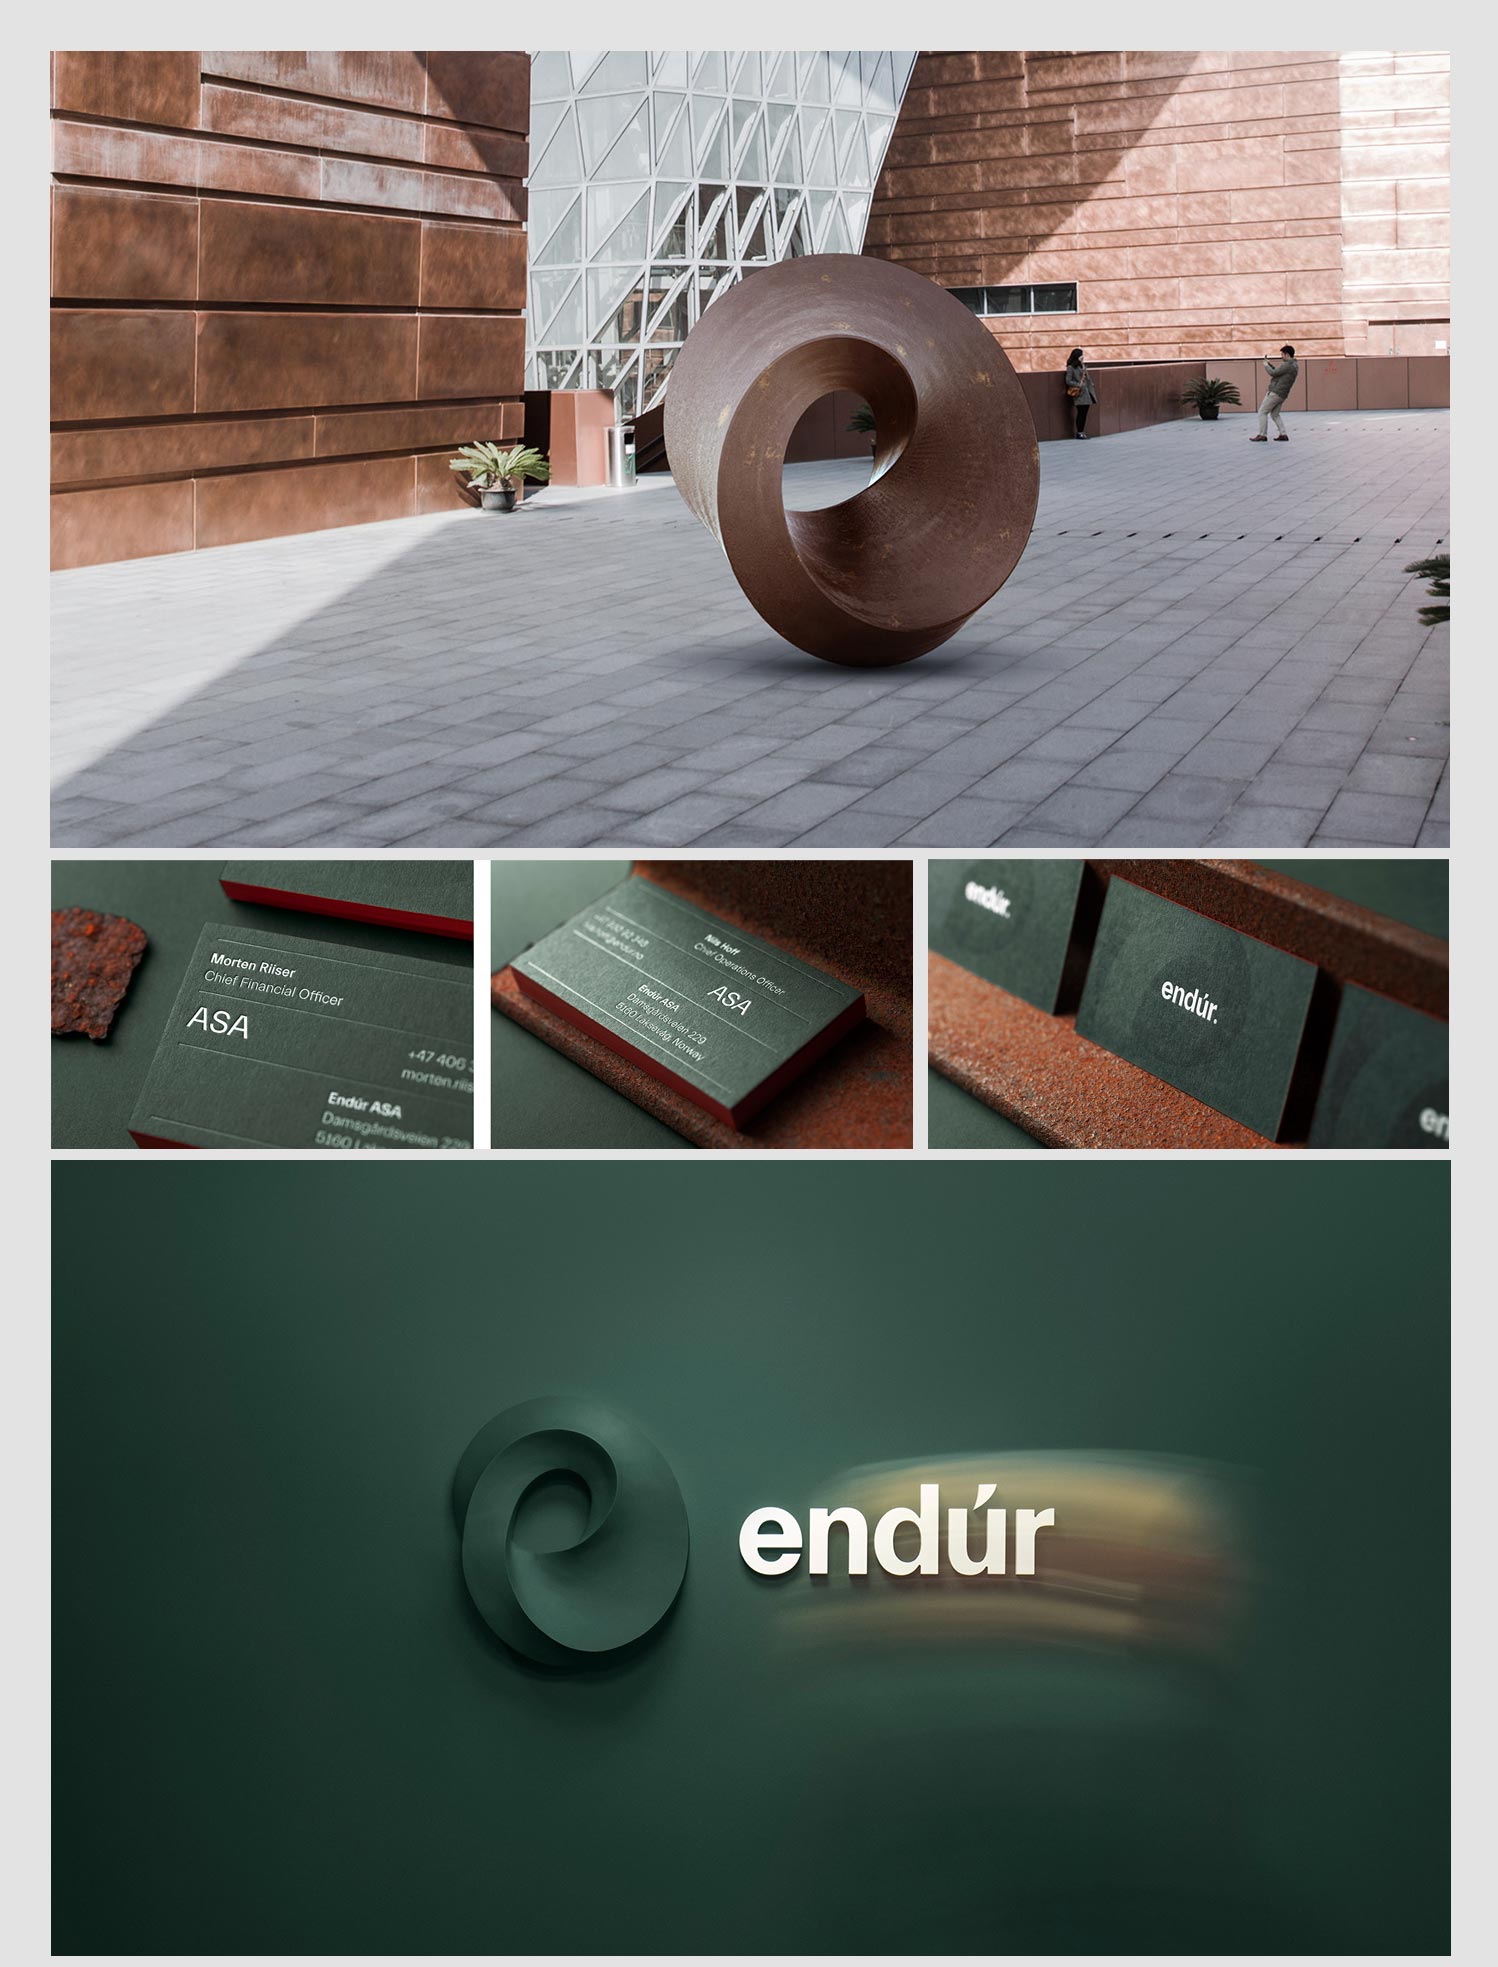 Endur - Marka posiadająca logo o bardzo unikalnych charakterze.